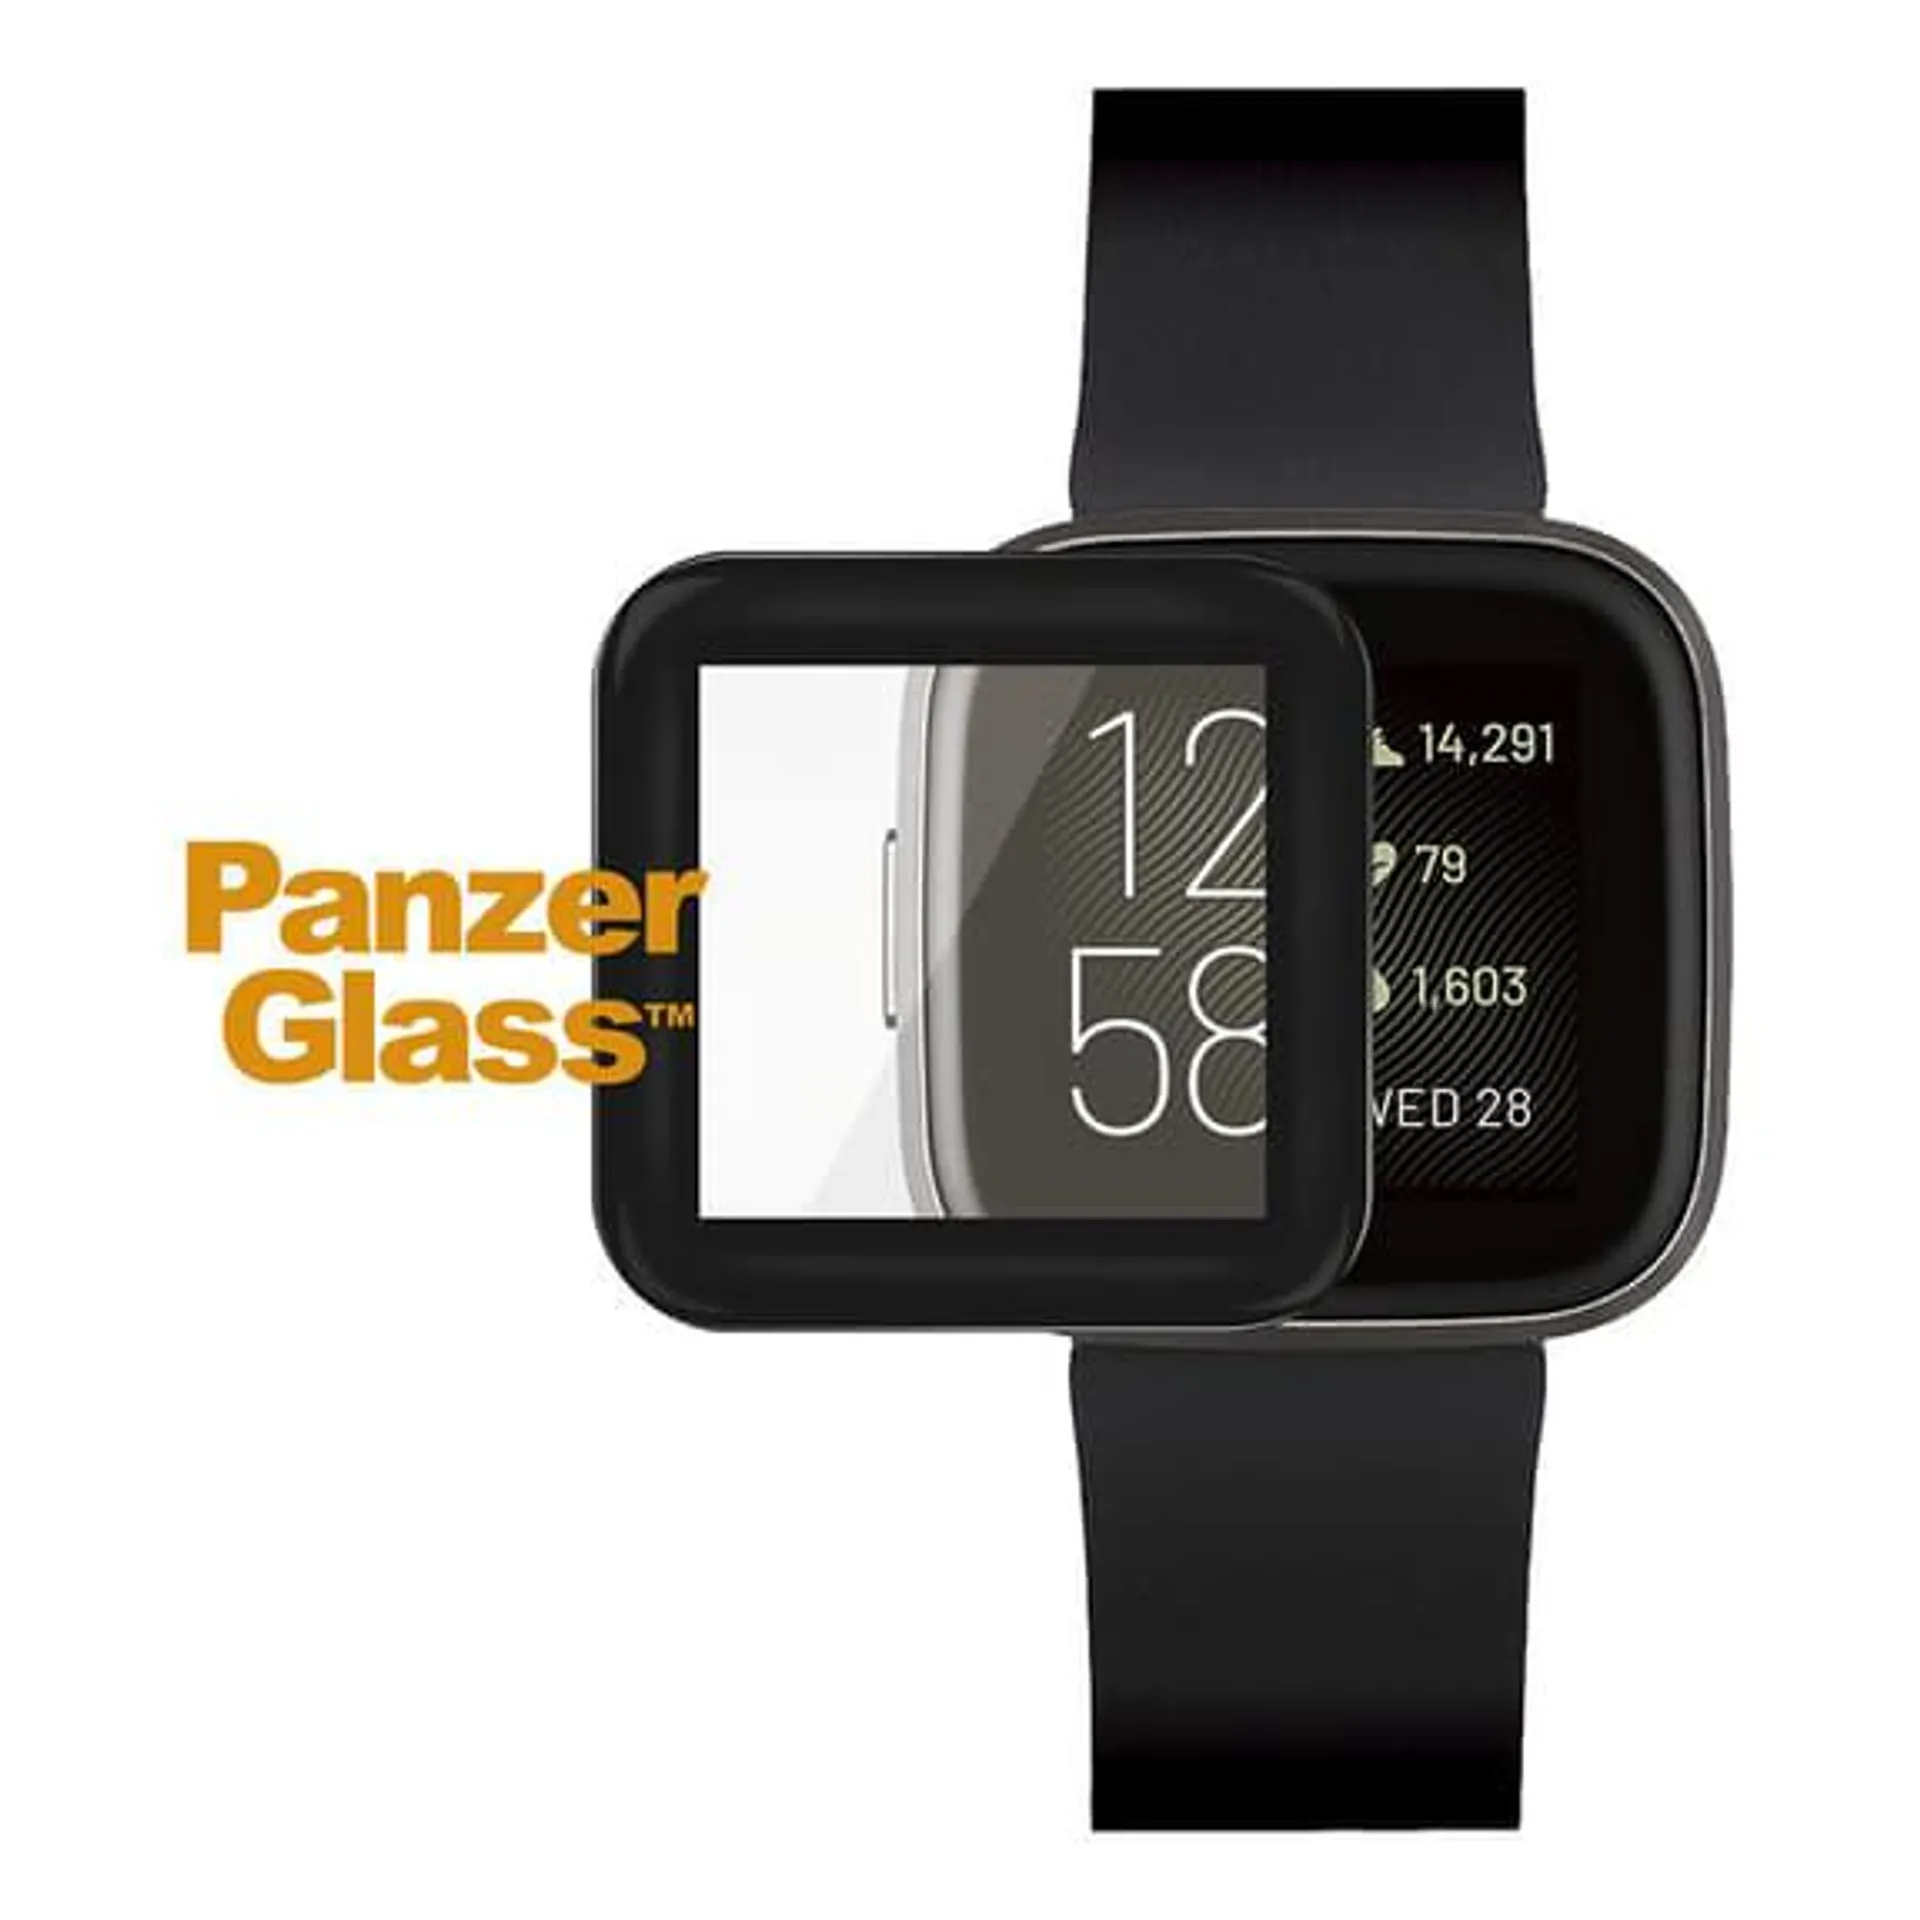 Protecteur d'écran en verre trempé PanzerGlass Fitbit Versa 2 noir